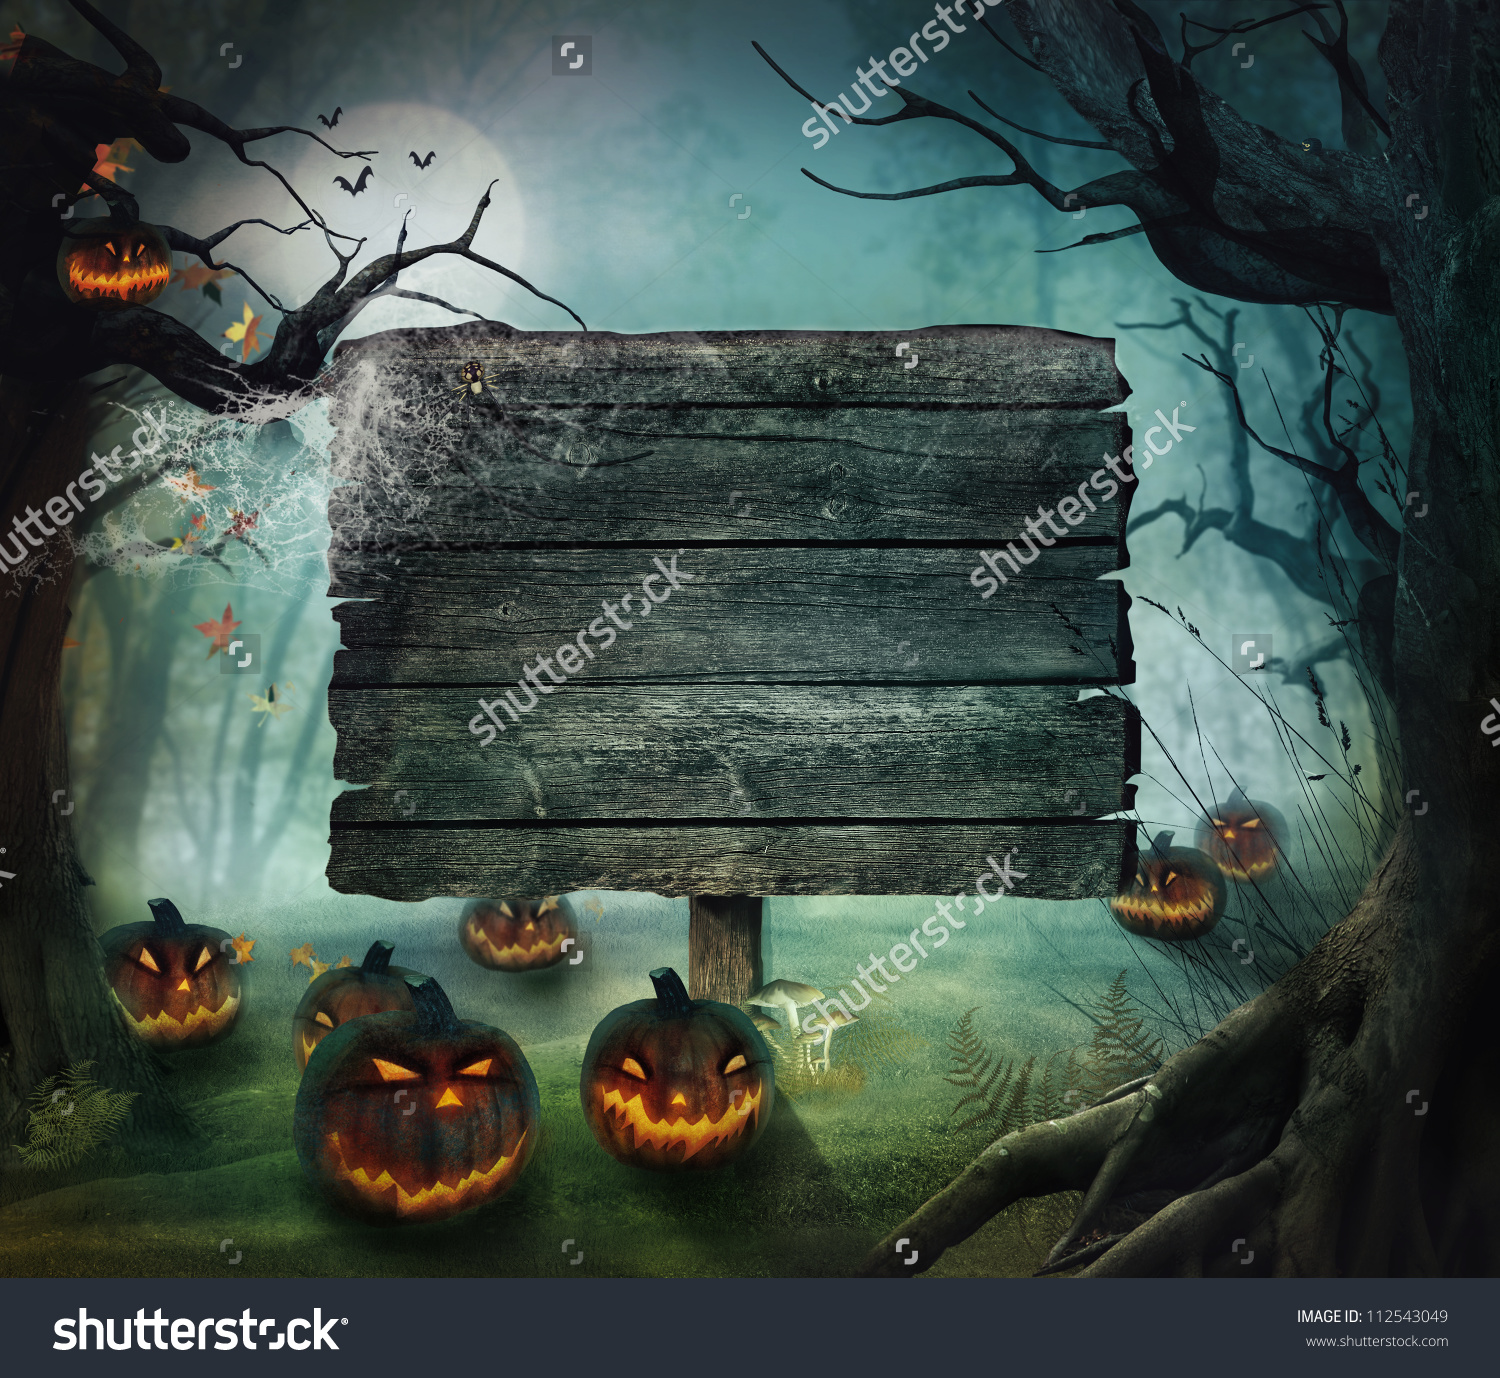 spooky halloween backgrounds #21